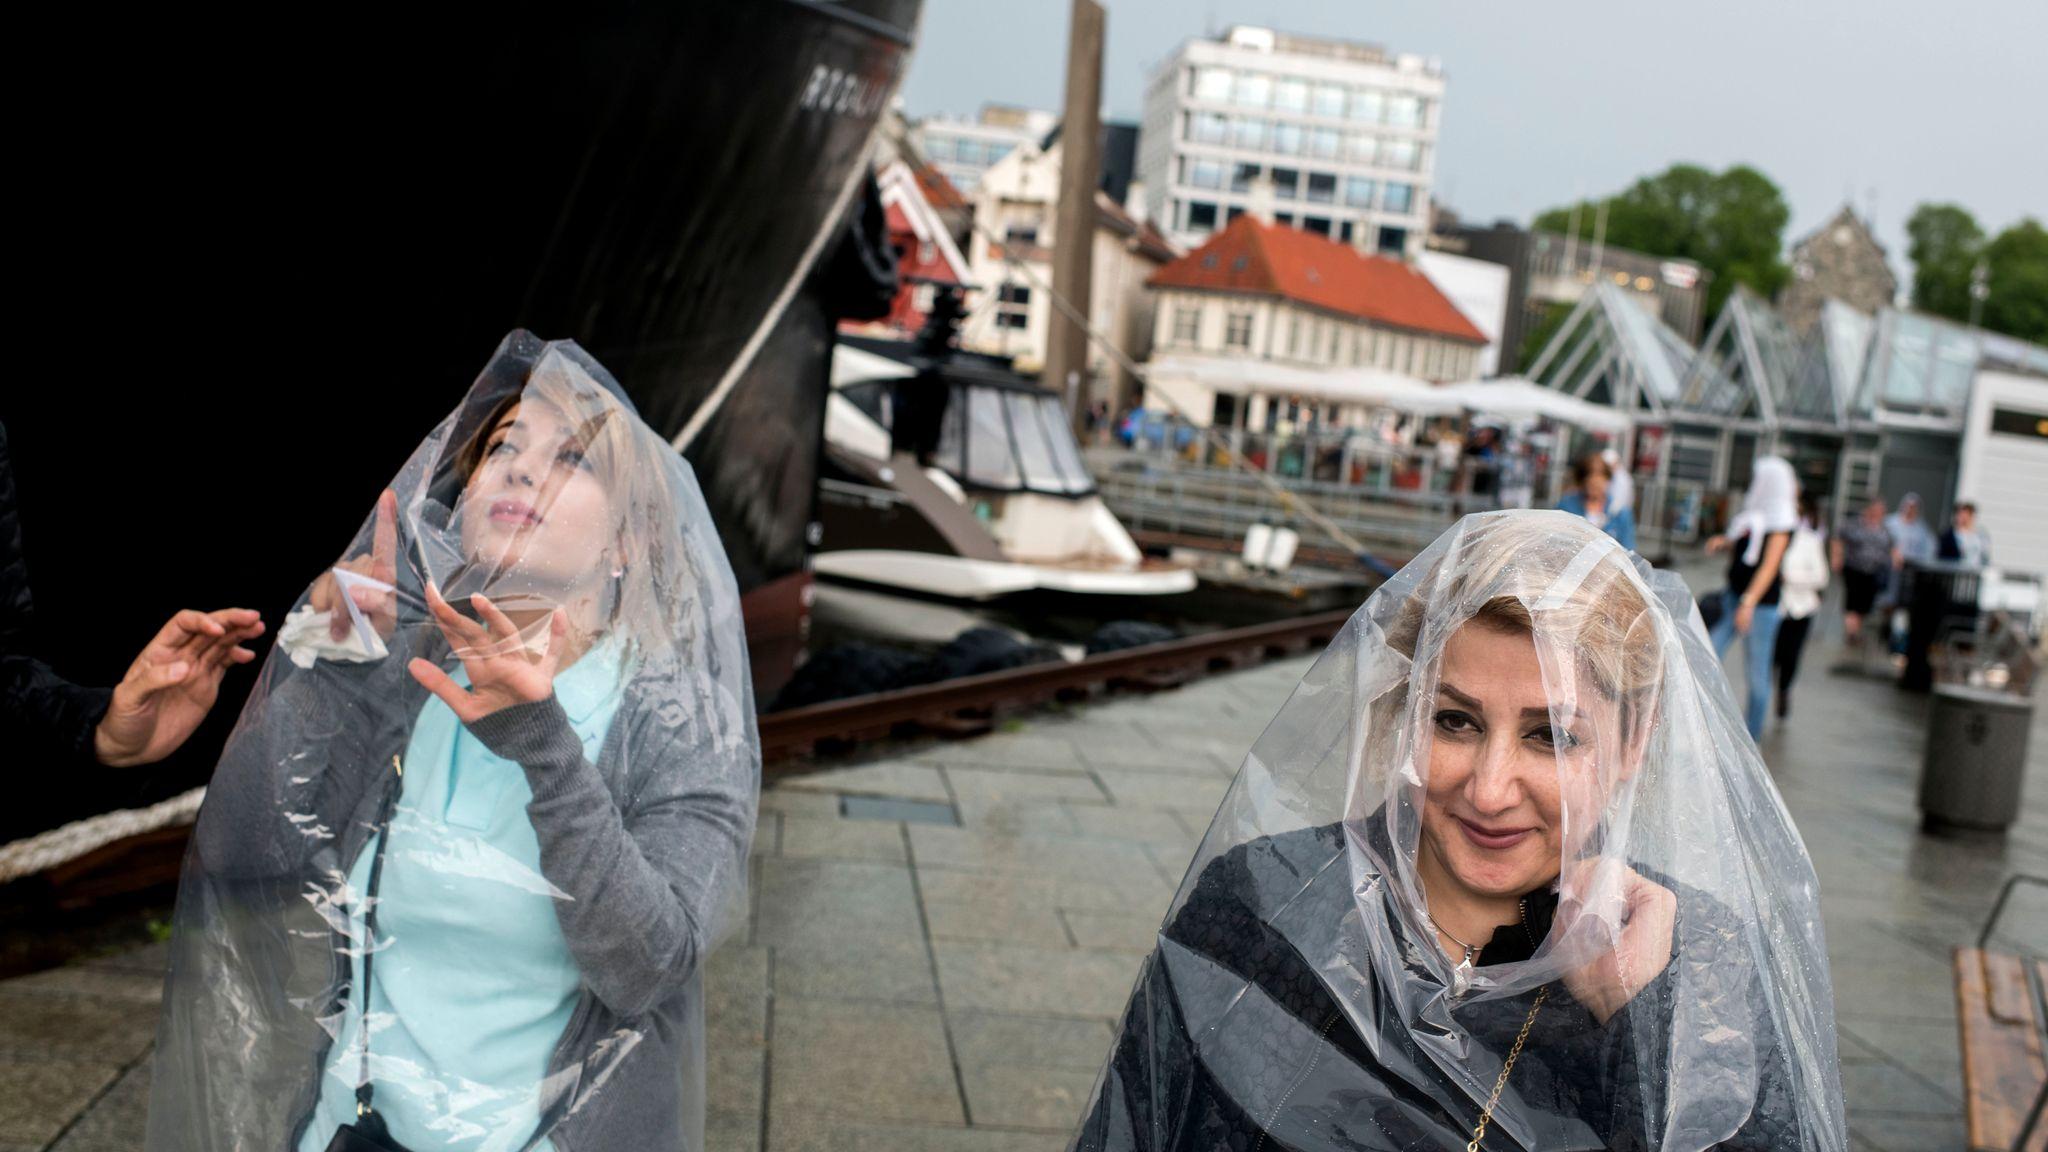 I Stavanger førte styrtregn til salgsboom for regnponchoer. Regnet kom overraskende på cruiseturister.